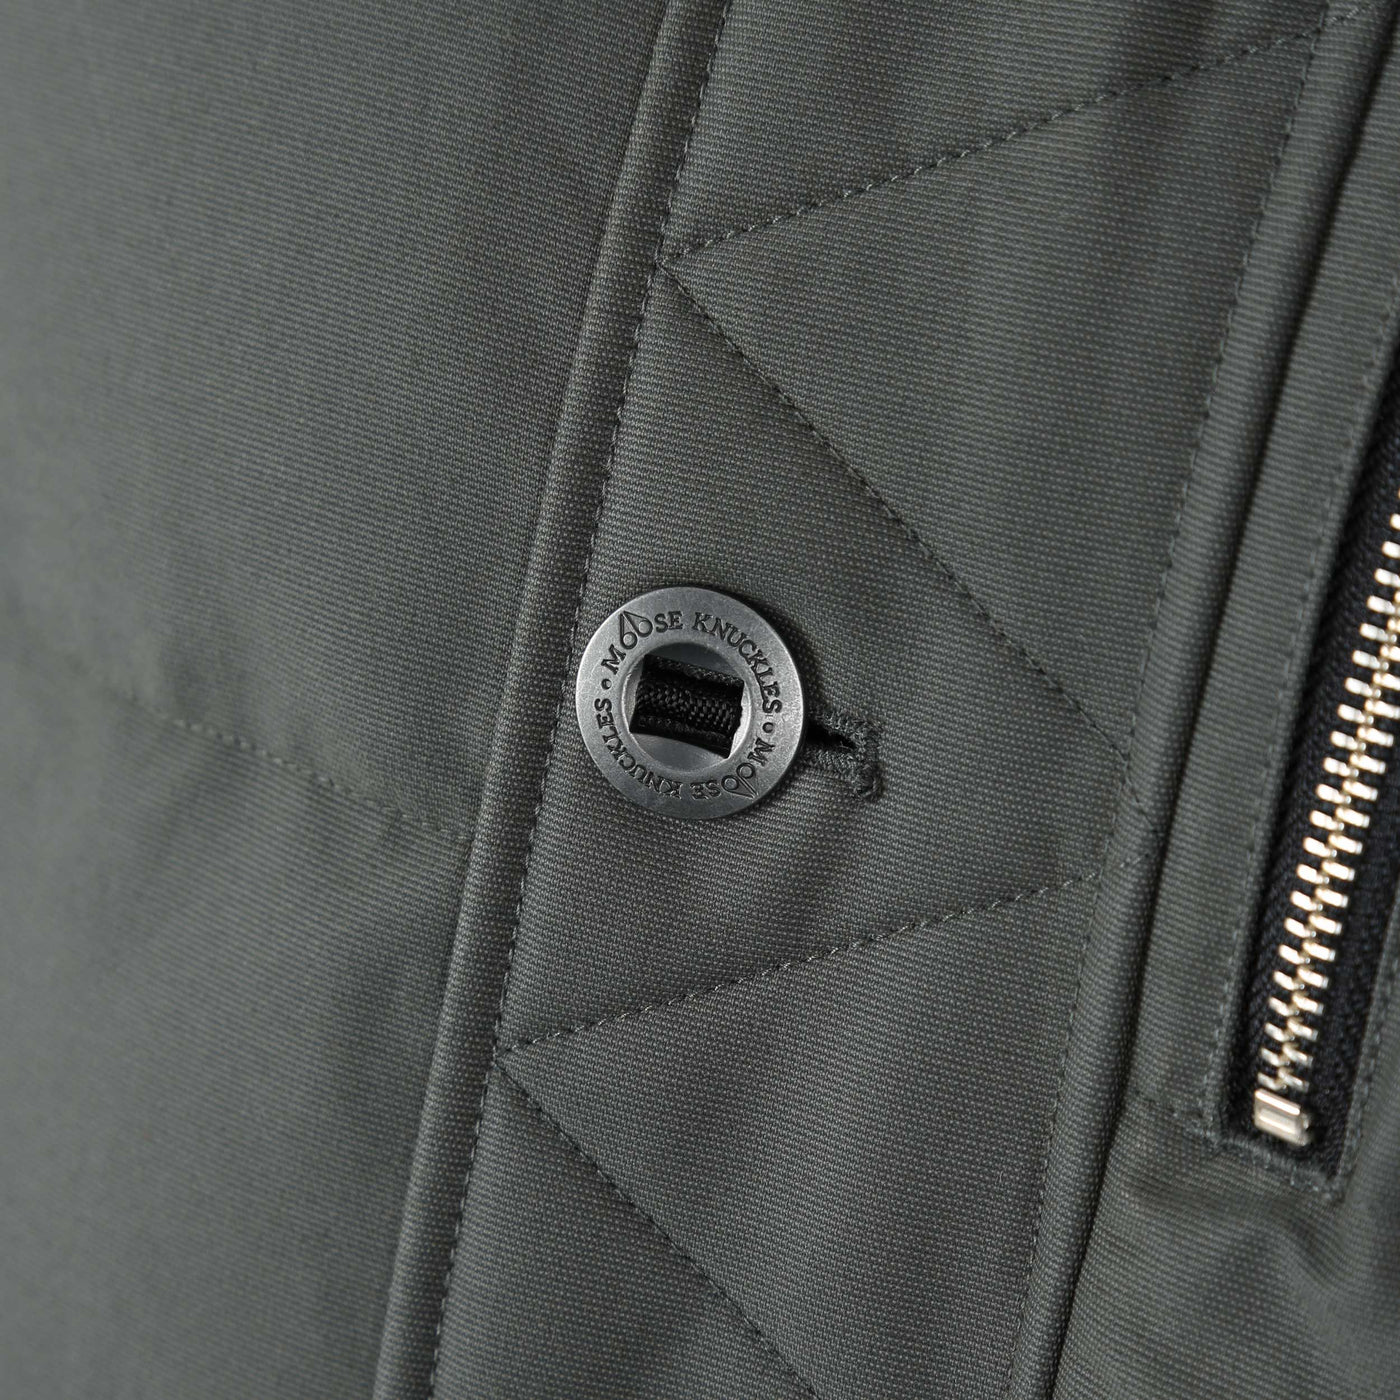 Moose Knuckles 3Q Jacket in Forrest Hill & Black Fur Button